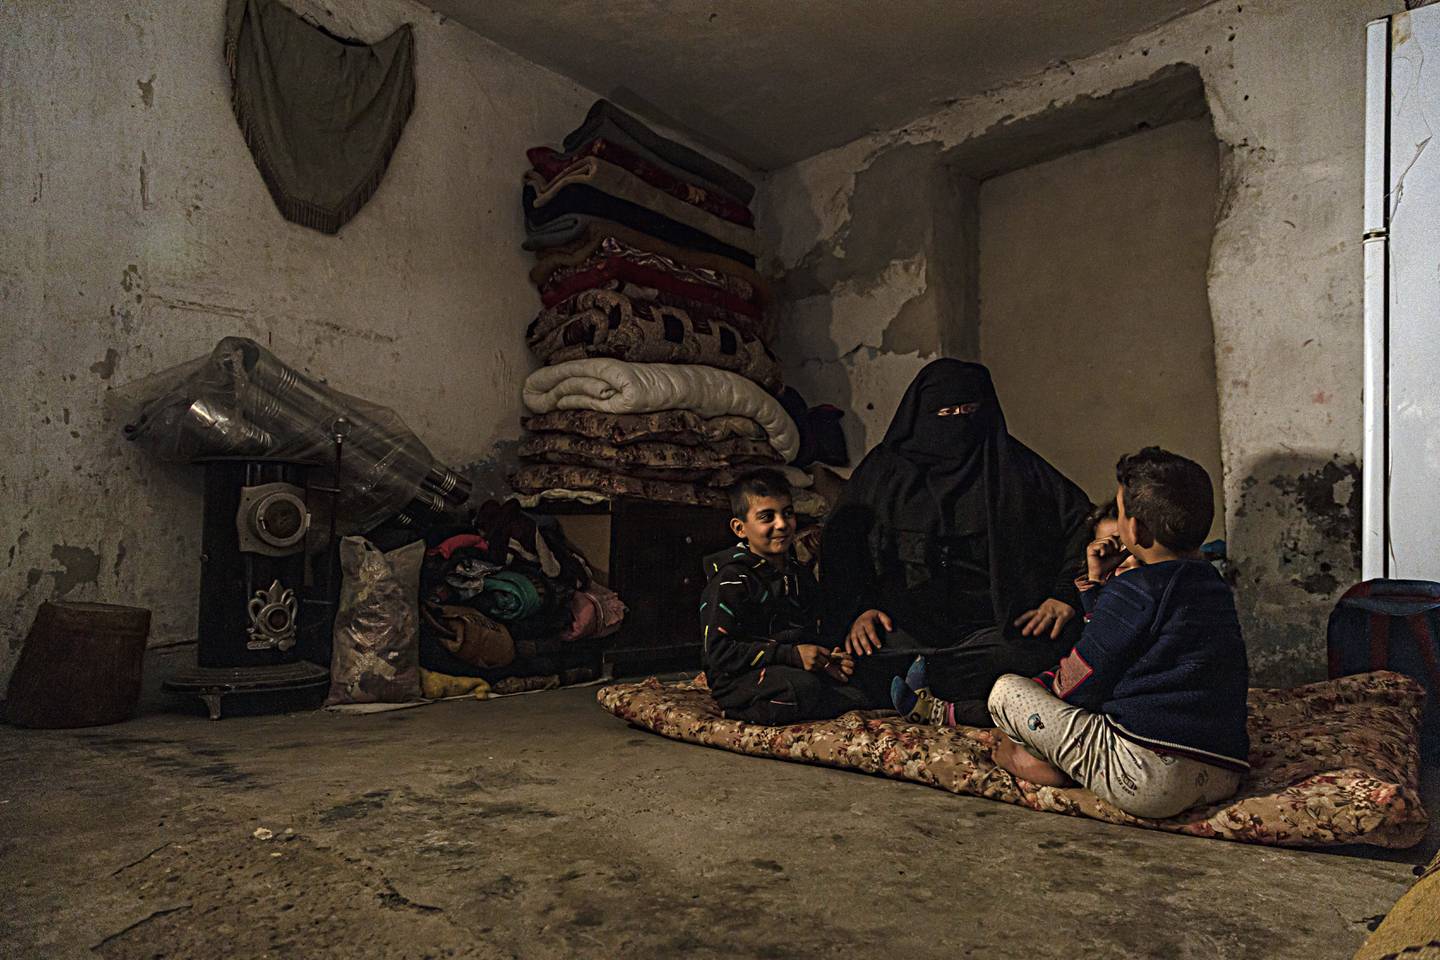 BLIR IKKE GODTATT: Marwa Ahmad sitter sammen med barna sine i en nedslitt leilighet i Raqqa i Syria. Hun er blant flere tusen enker og koner til IS-militante som enten er døde eller pågrepet. Tilbake i det syriske samfunnet sliter alenemoren og barna med å bli godtatt.